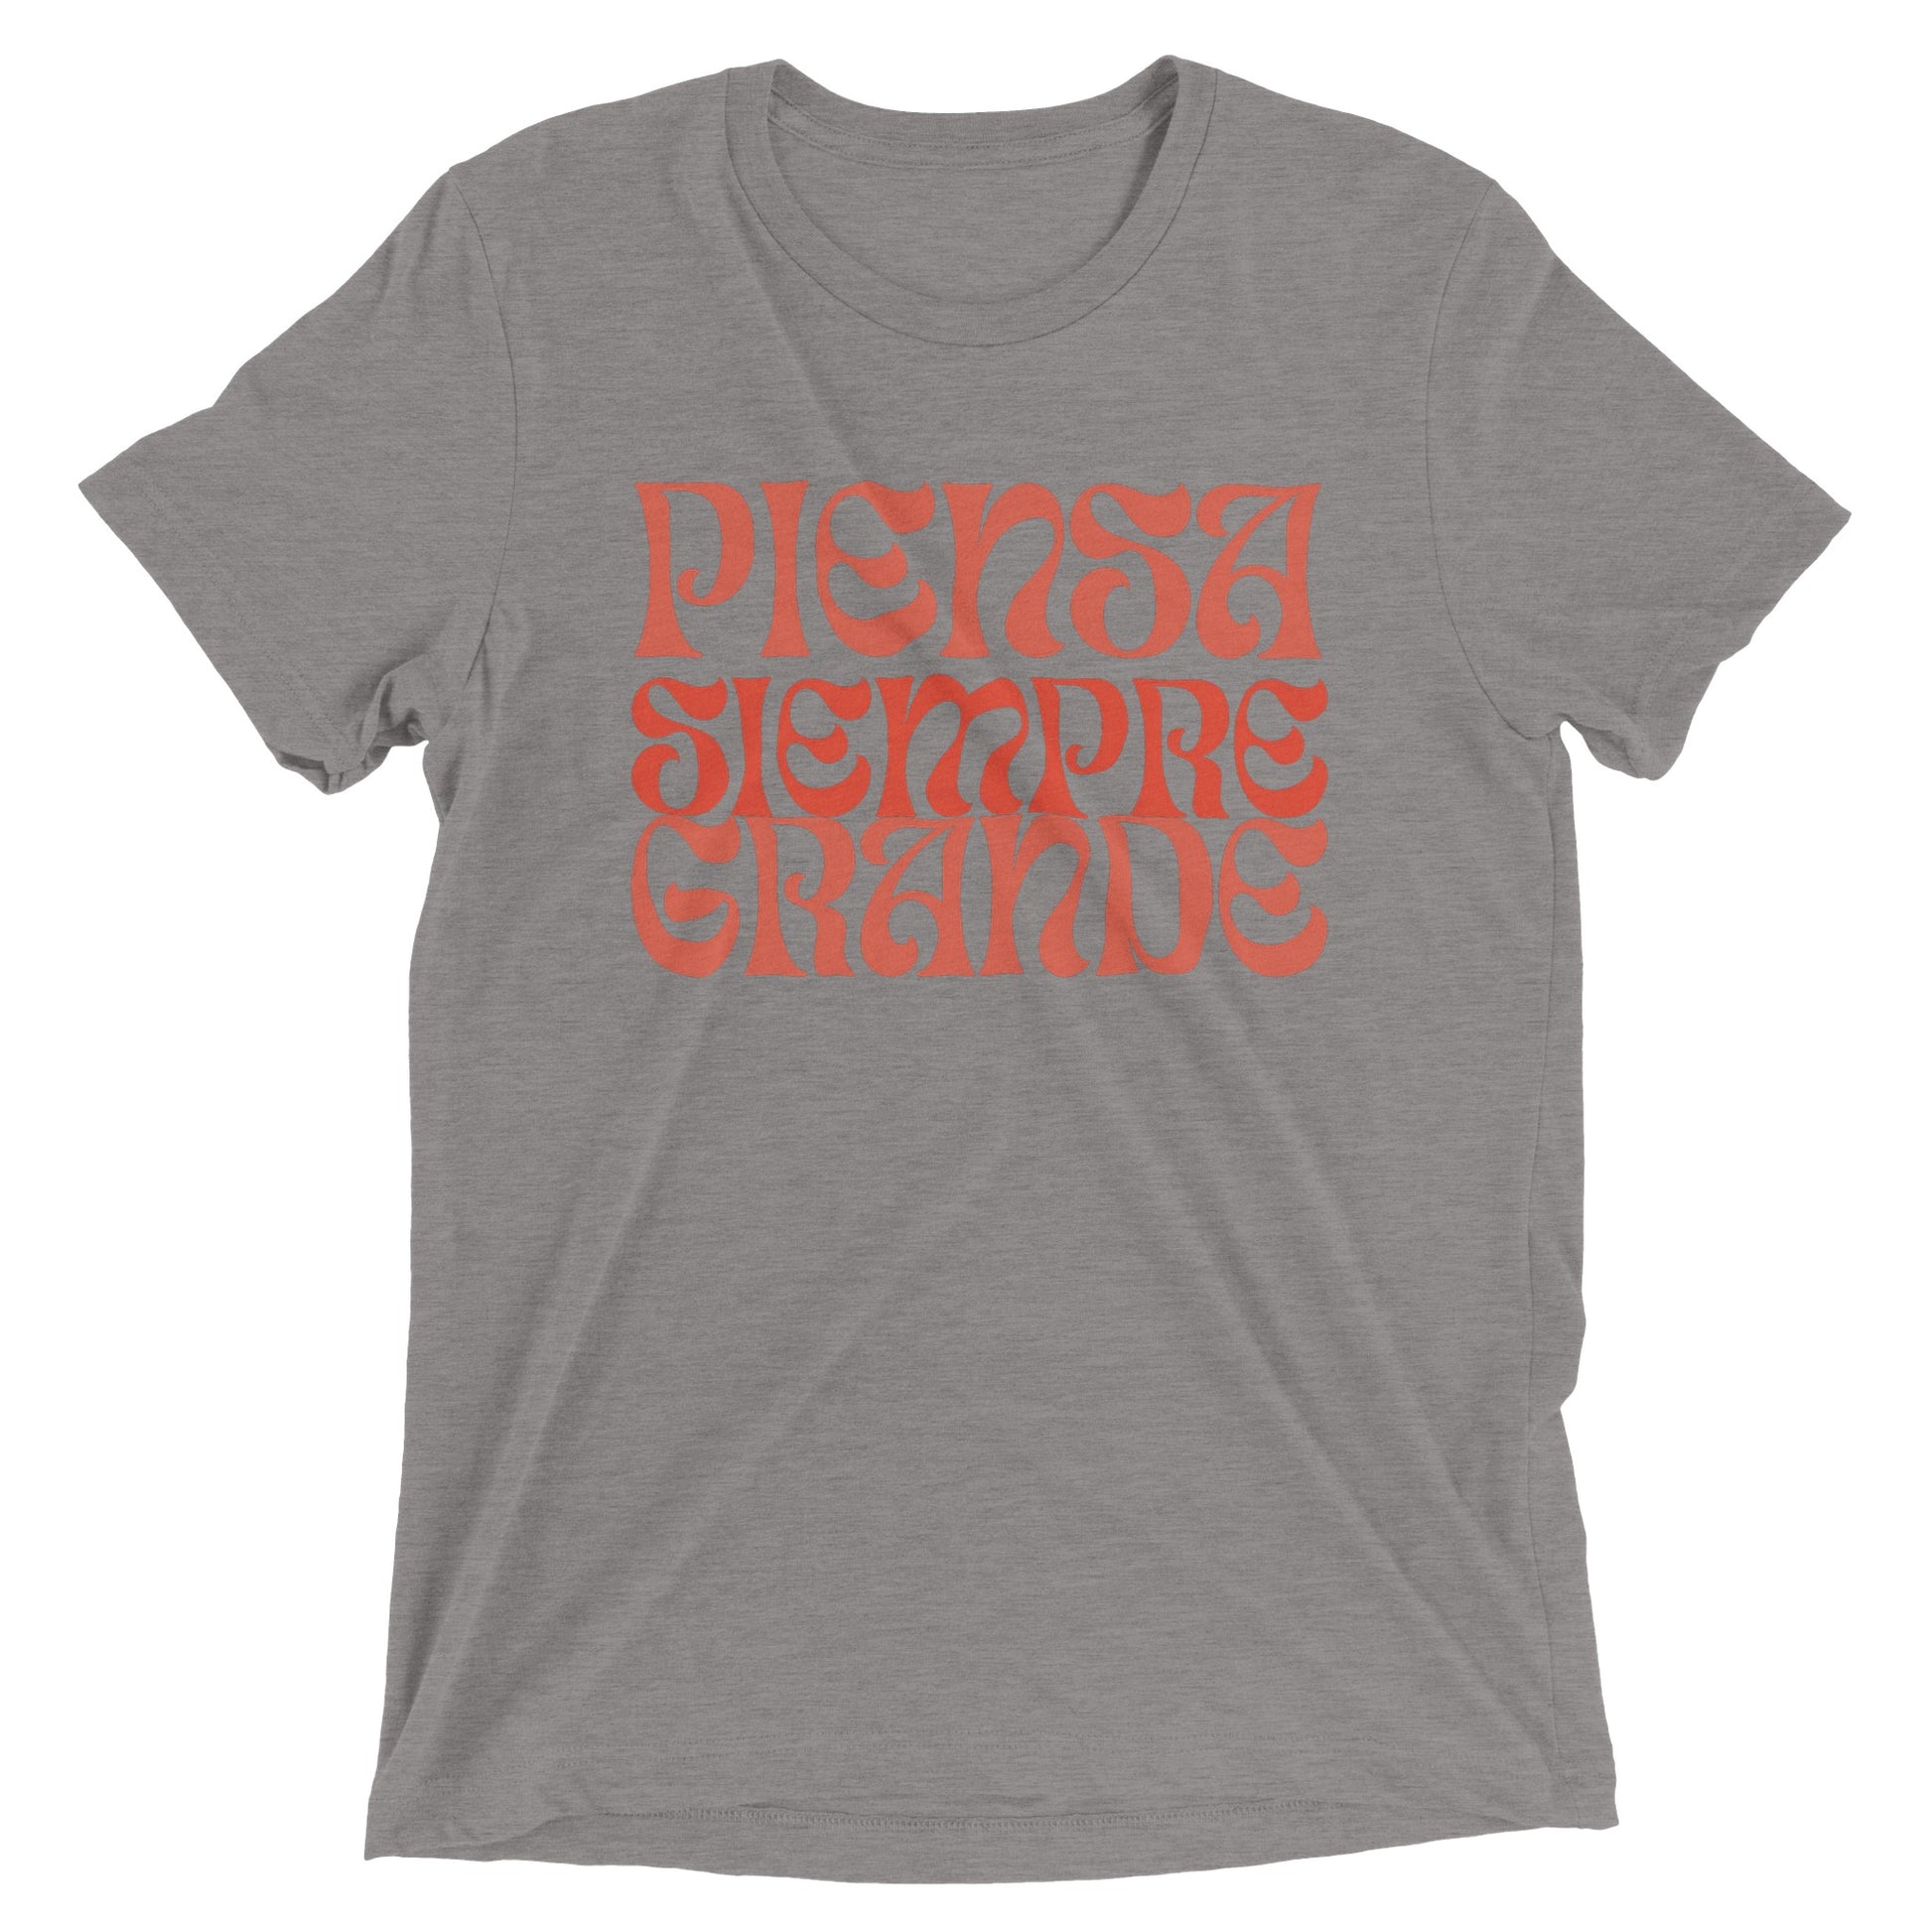 Camiseta gris de mujer con letras